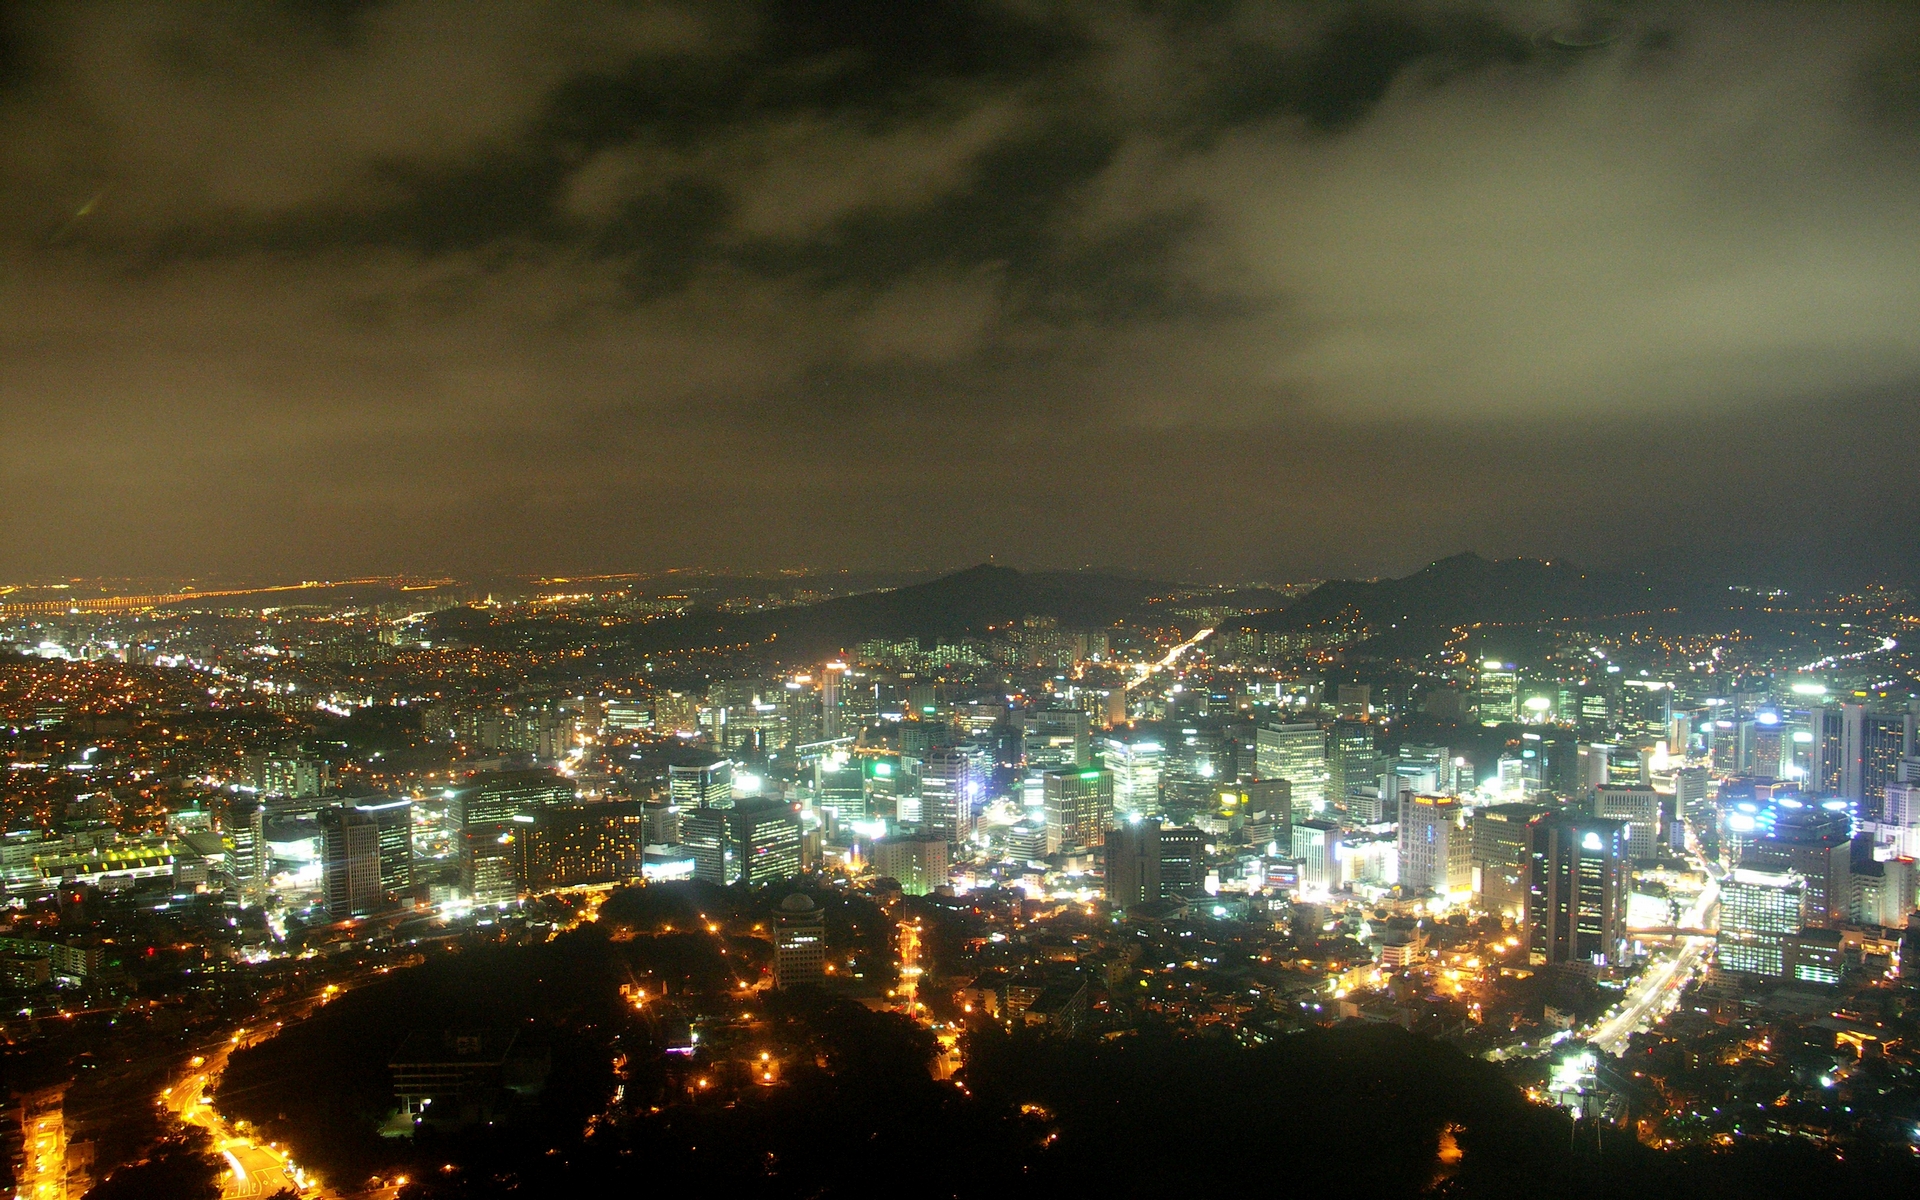 architektura - budynkinowoczesne - tapety_cywilizacja_Images from Seoul Tower1